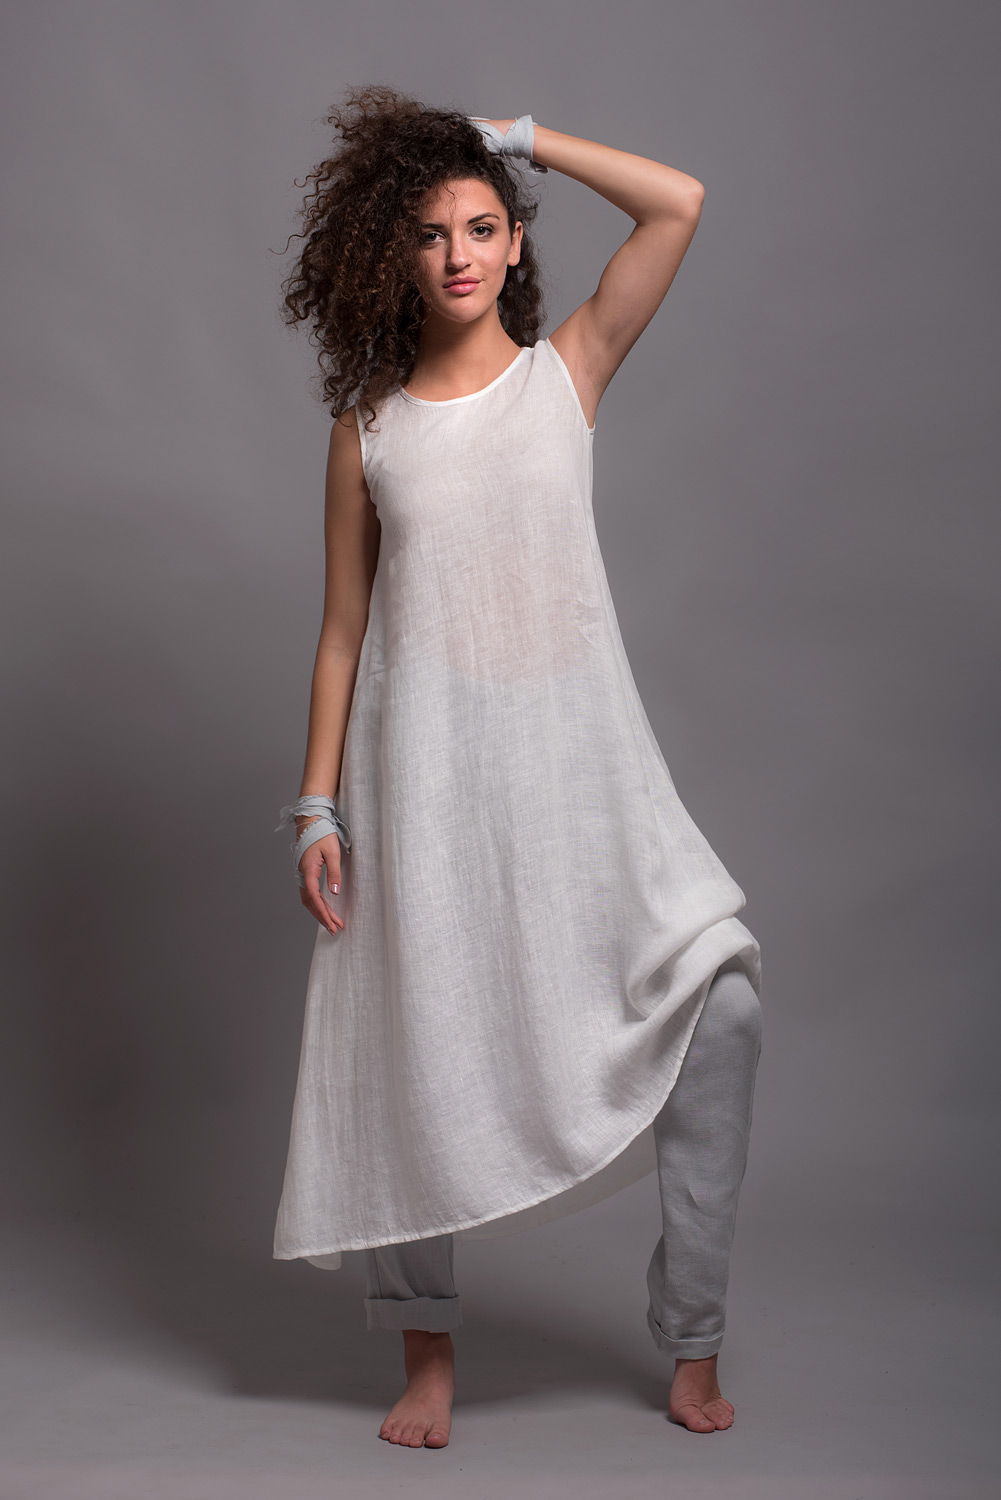 Khushi Print Women Gown White Dress - Buy Khushi Print Women Gown White  Dress Online at Best Prices in India | Flipkart.com